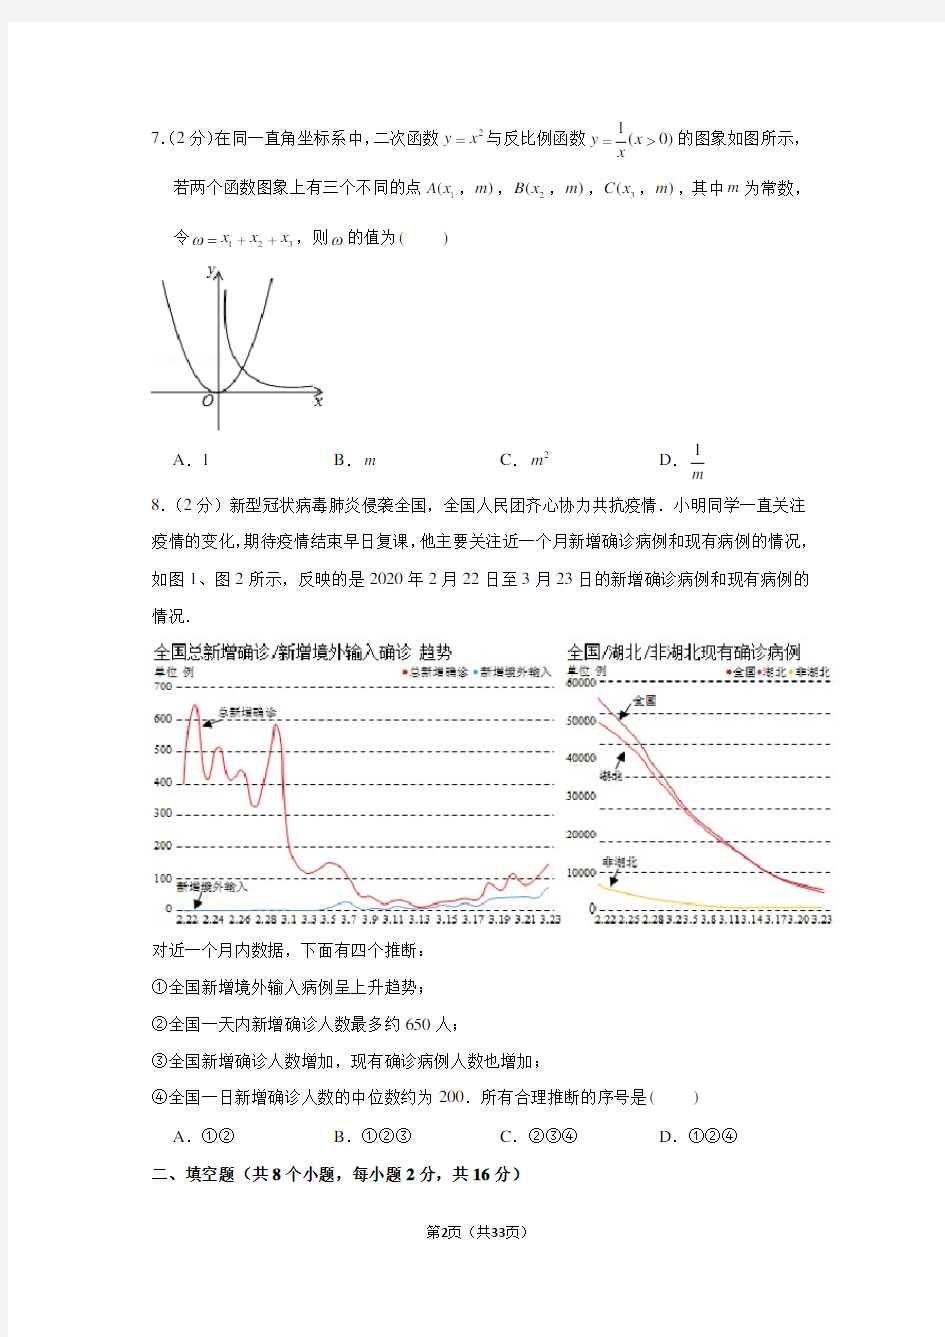 2020年北京五中分校中考数学模拟试卷(4月份)